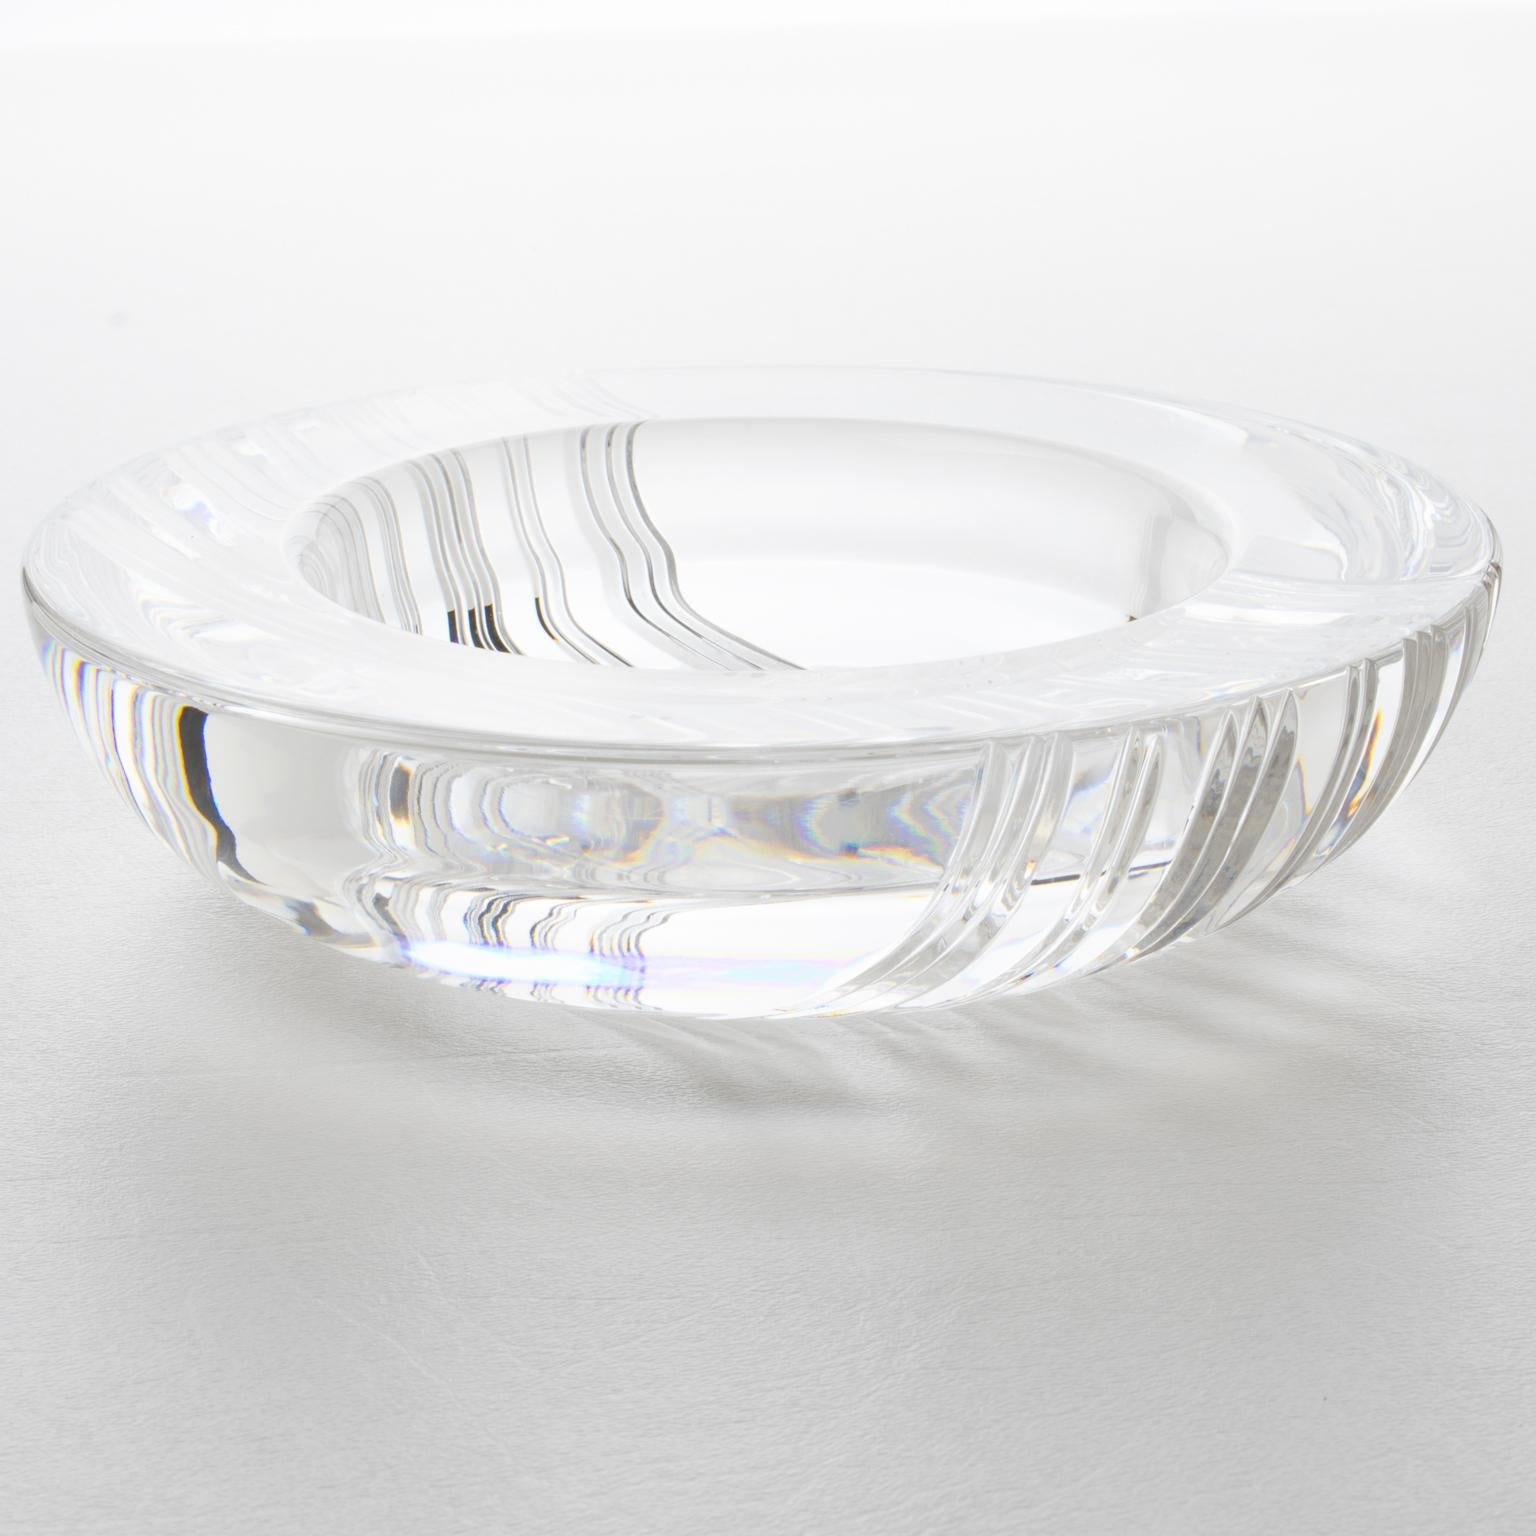 Dieser exquisite Aschenbecher aus Kristall von Christian Dior ist die perfekte Ergänzung für einen Hauch von Luxus in jedem Raum. Das komplizierte und stark geschnitzte Muster ist atemberaubend, mit abwechselnden Streifen rund um die Schale. Auf der